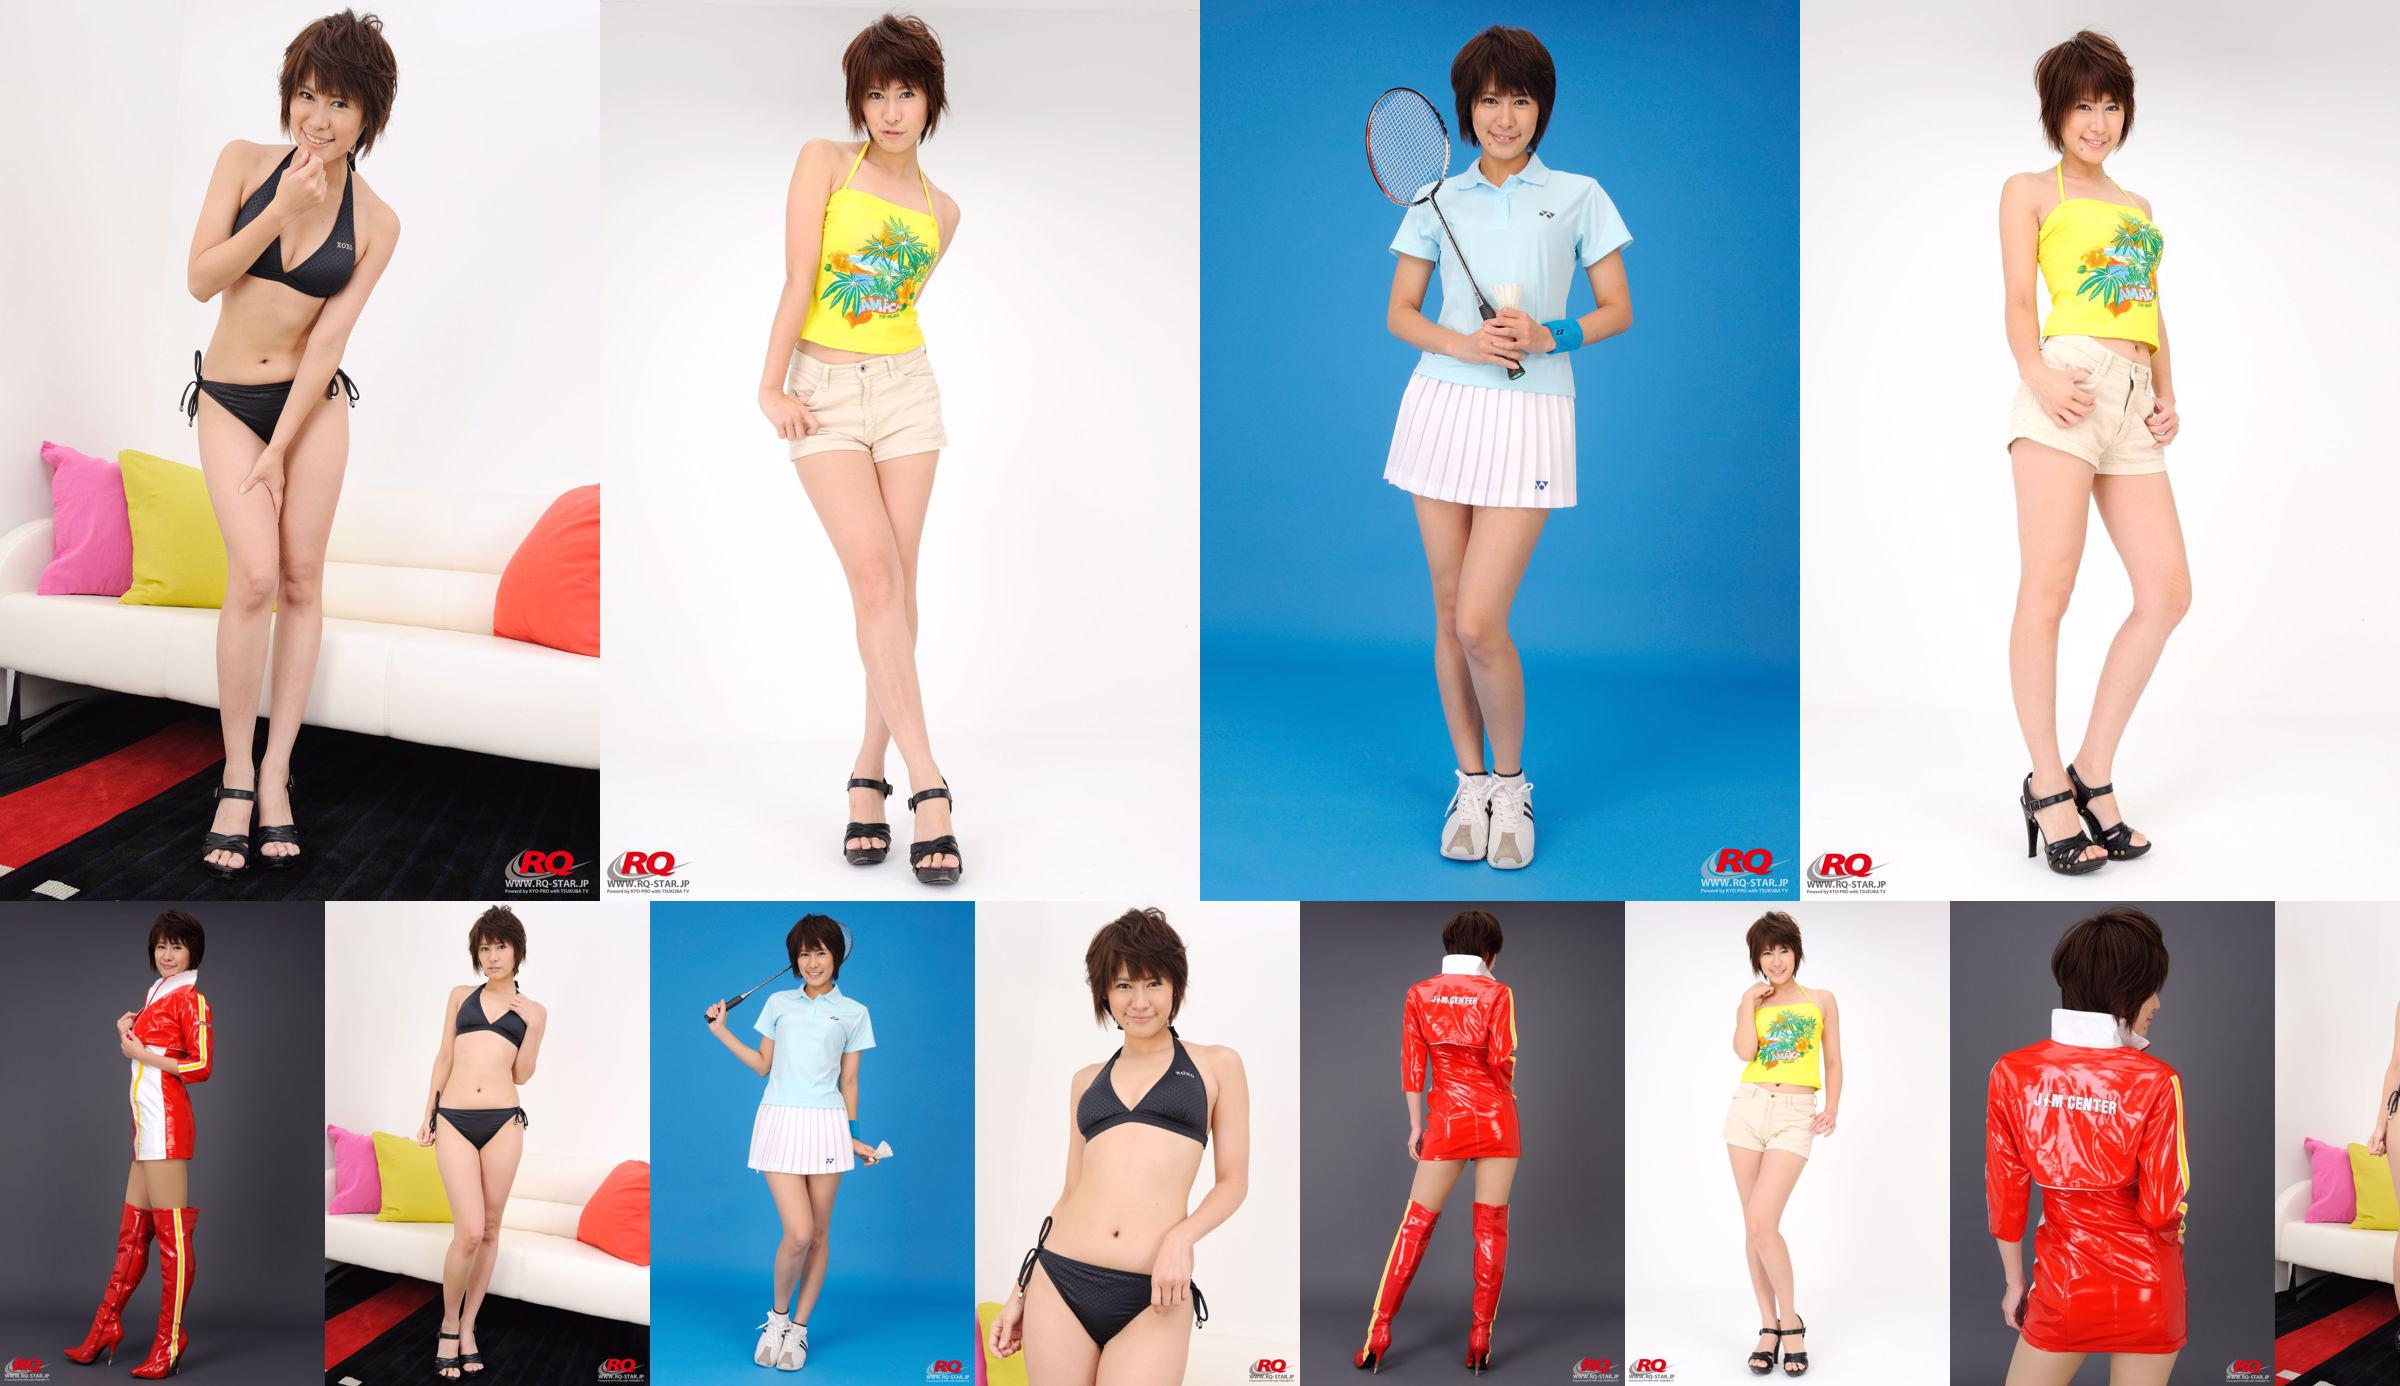 [RQ-STAR] NO.00081 Fujiwara Akiko Badminton Wear série de roupas esportivas No.47ba71 Página 18